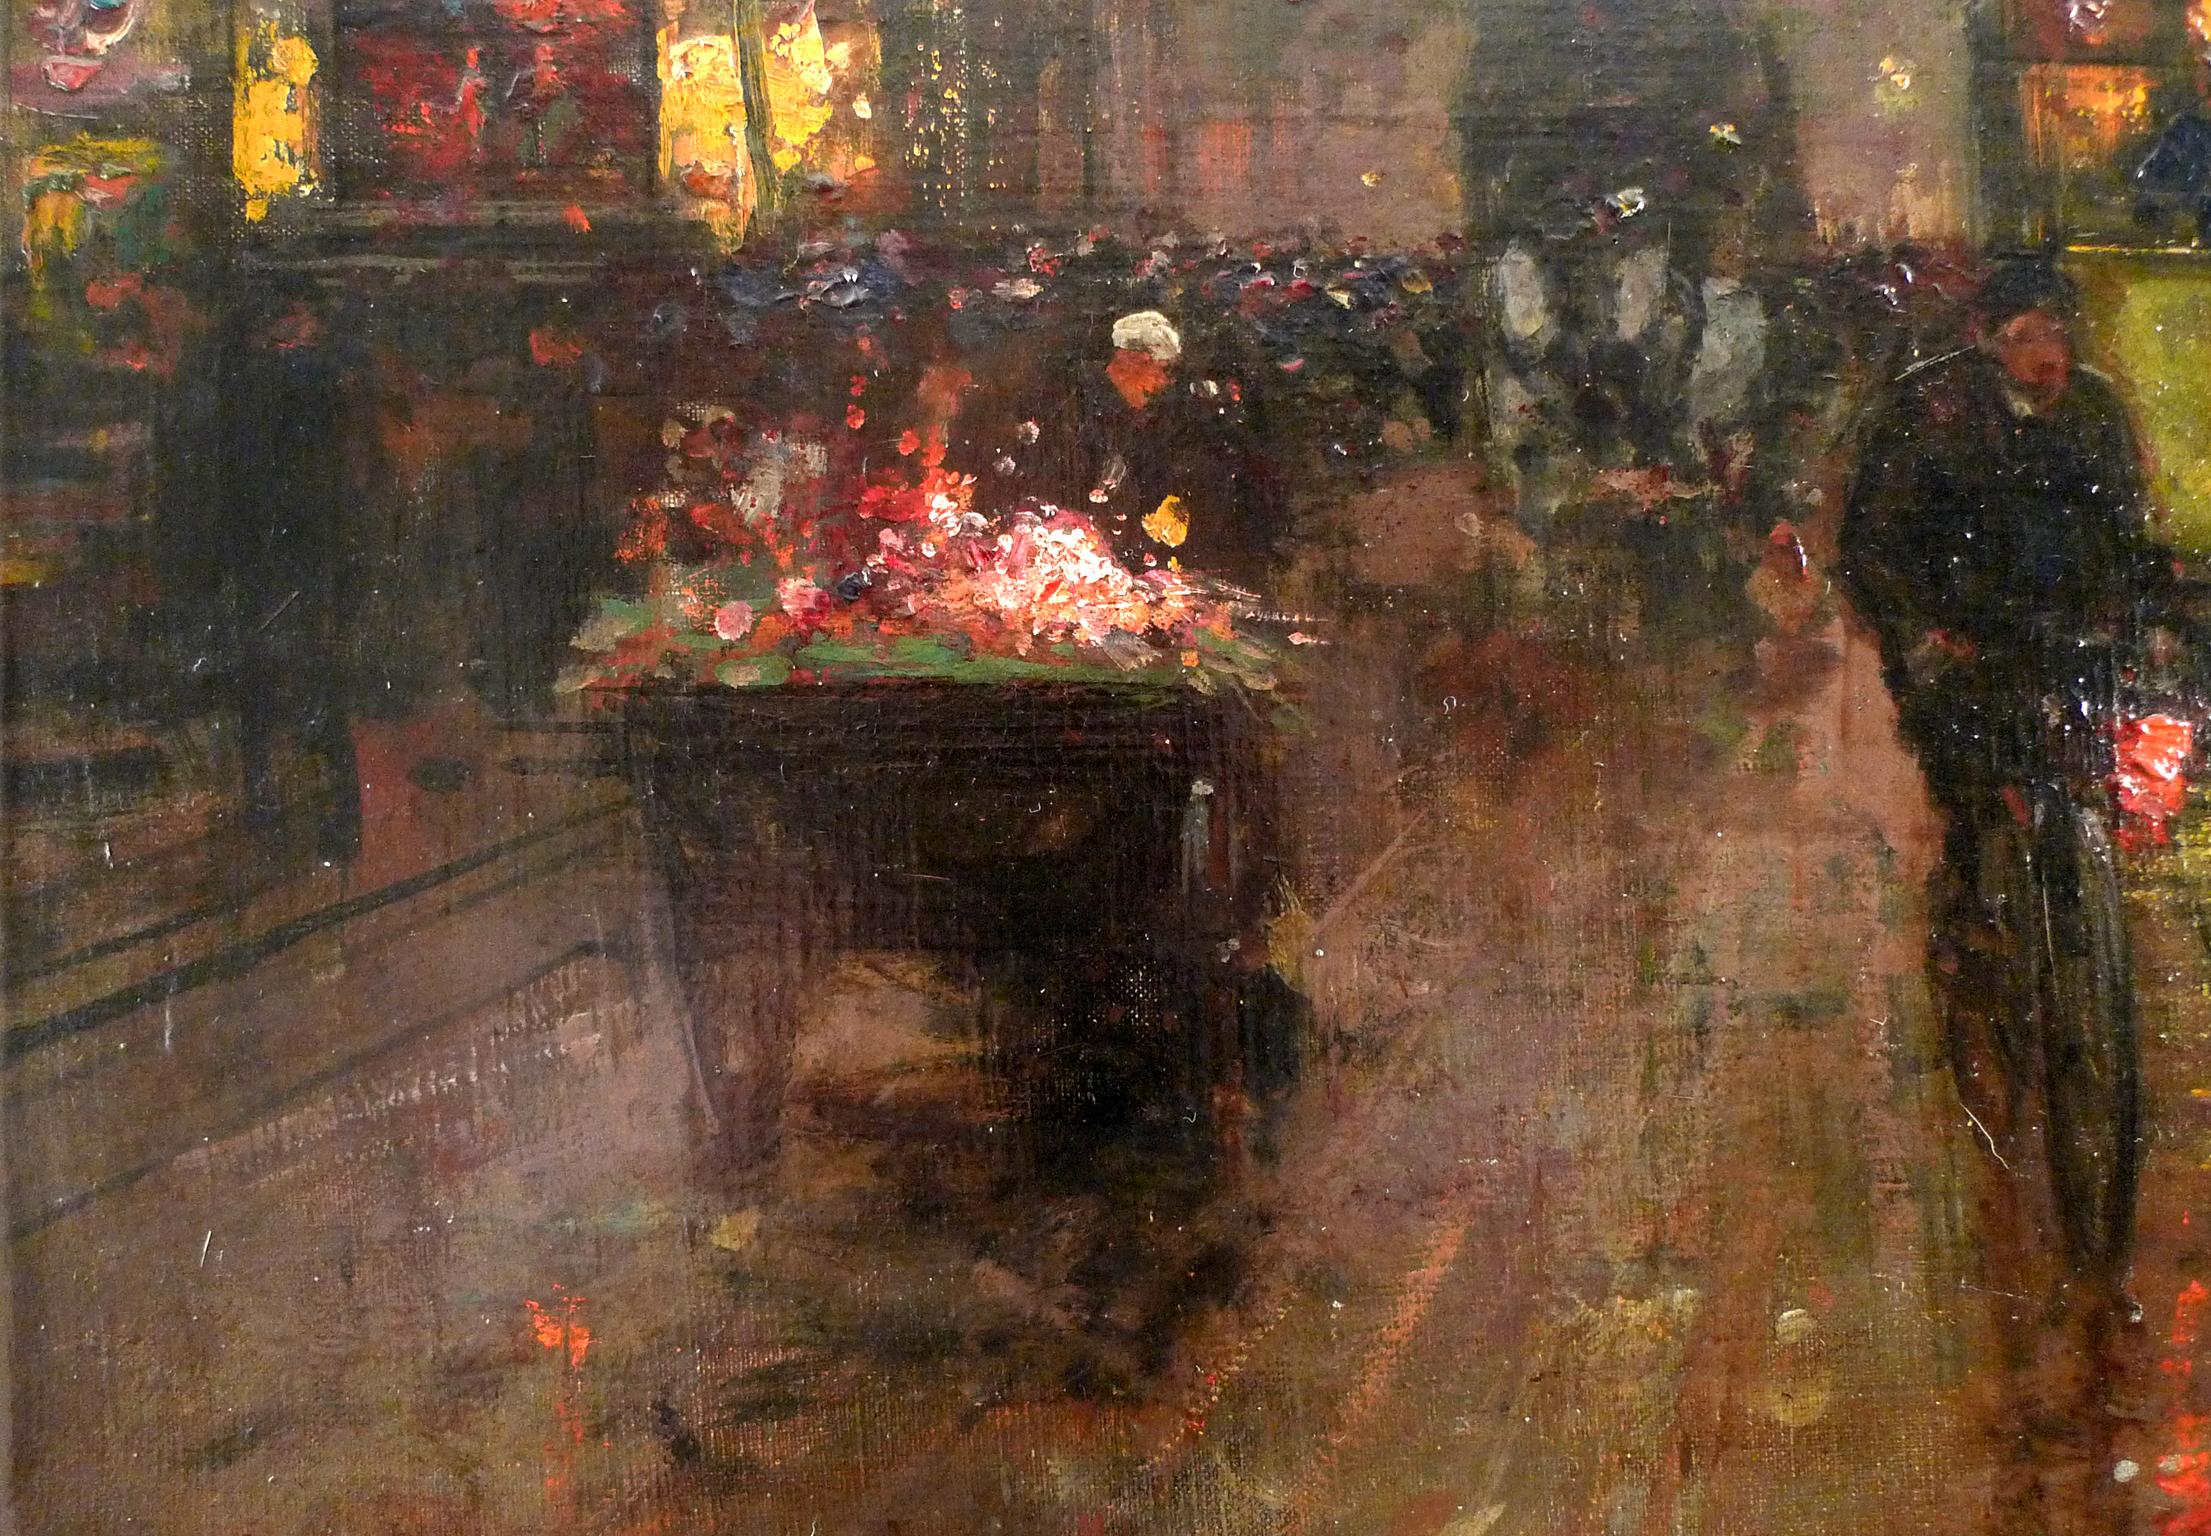 Place de la République, Huile sur toile du 20e siècle par Edouard Léon Cortès - Post-impressionnisme Painting par Édouard Leon Cortès